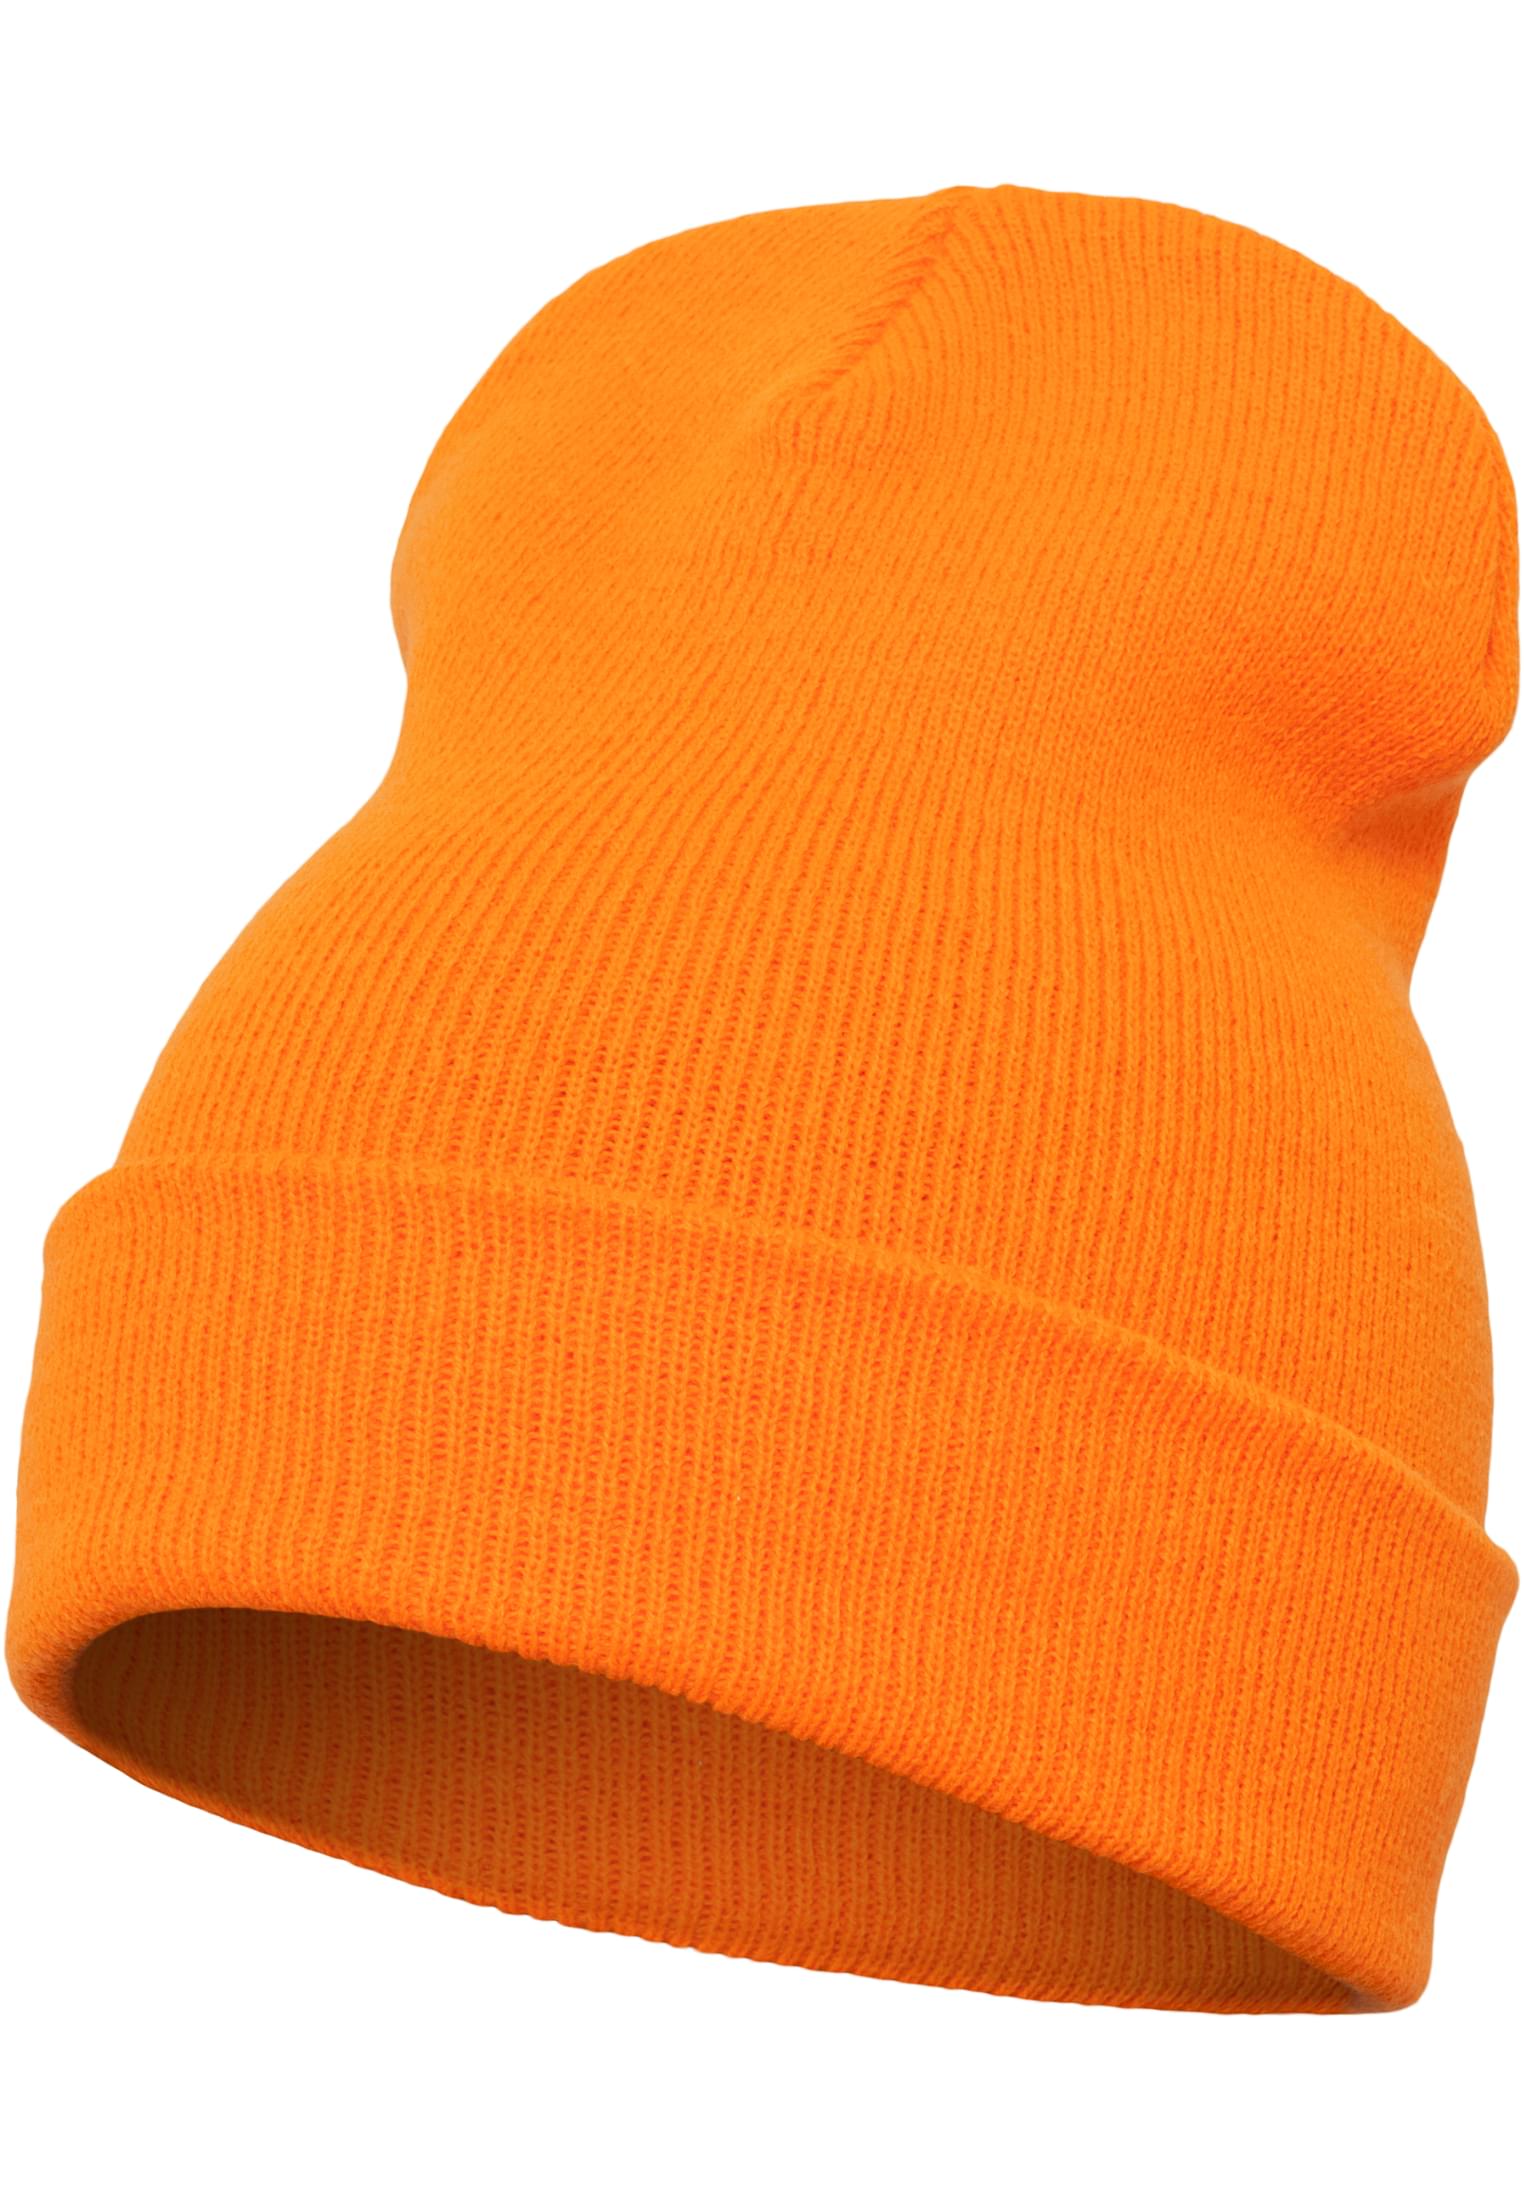 Flexfit Heavyweight Long Beanie in Farbe blaze orange